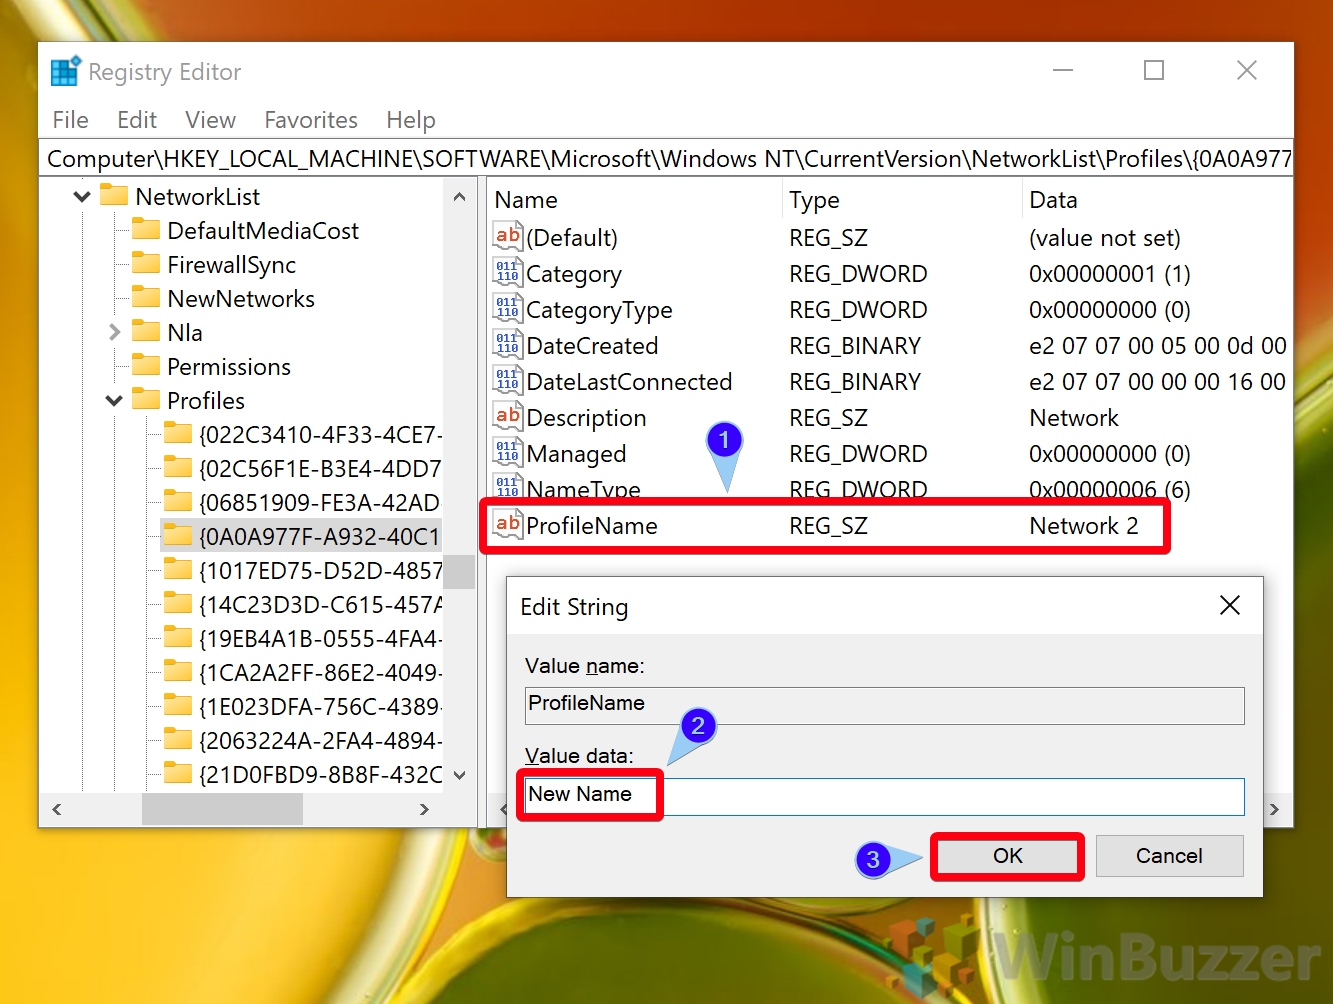 Windows 10 - Registry Editor - Go to the Path - Arrow Profiles - Click on Profile - ProfileName - Change Value Data - Accept